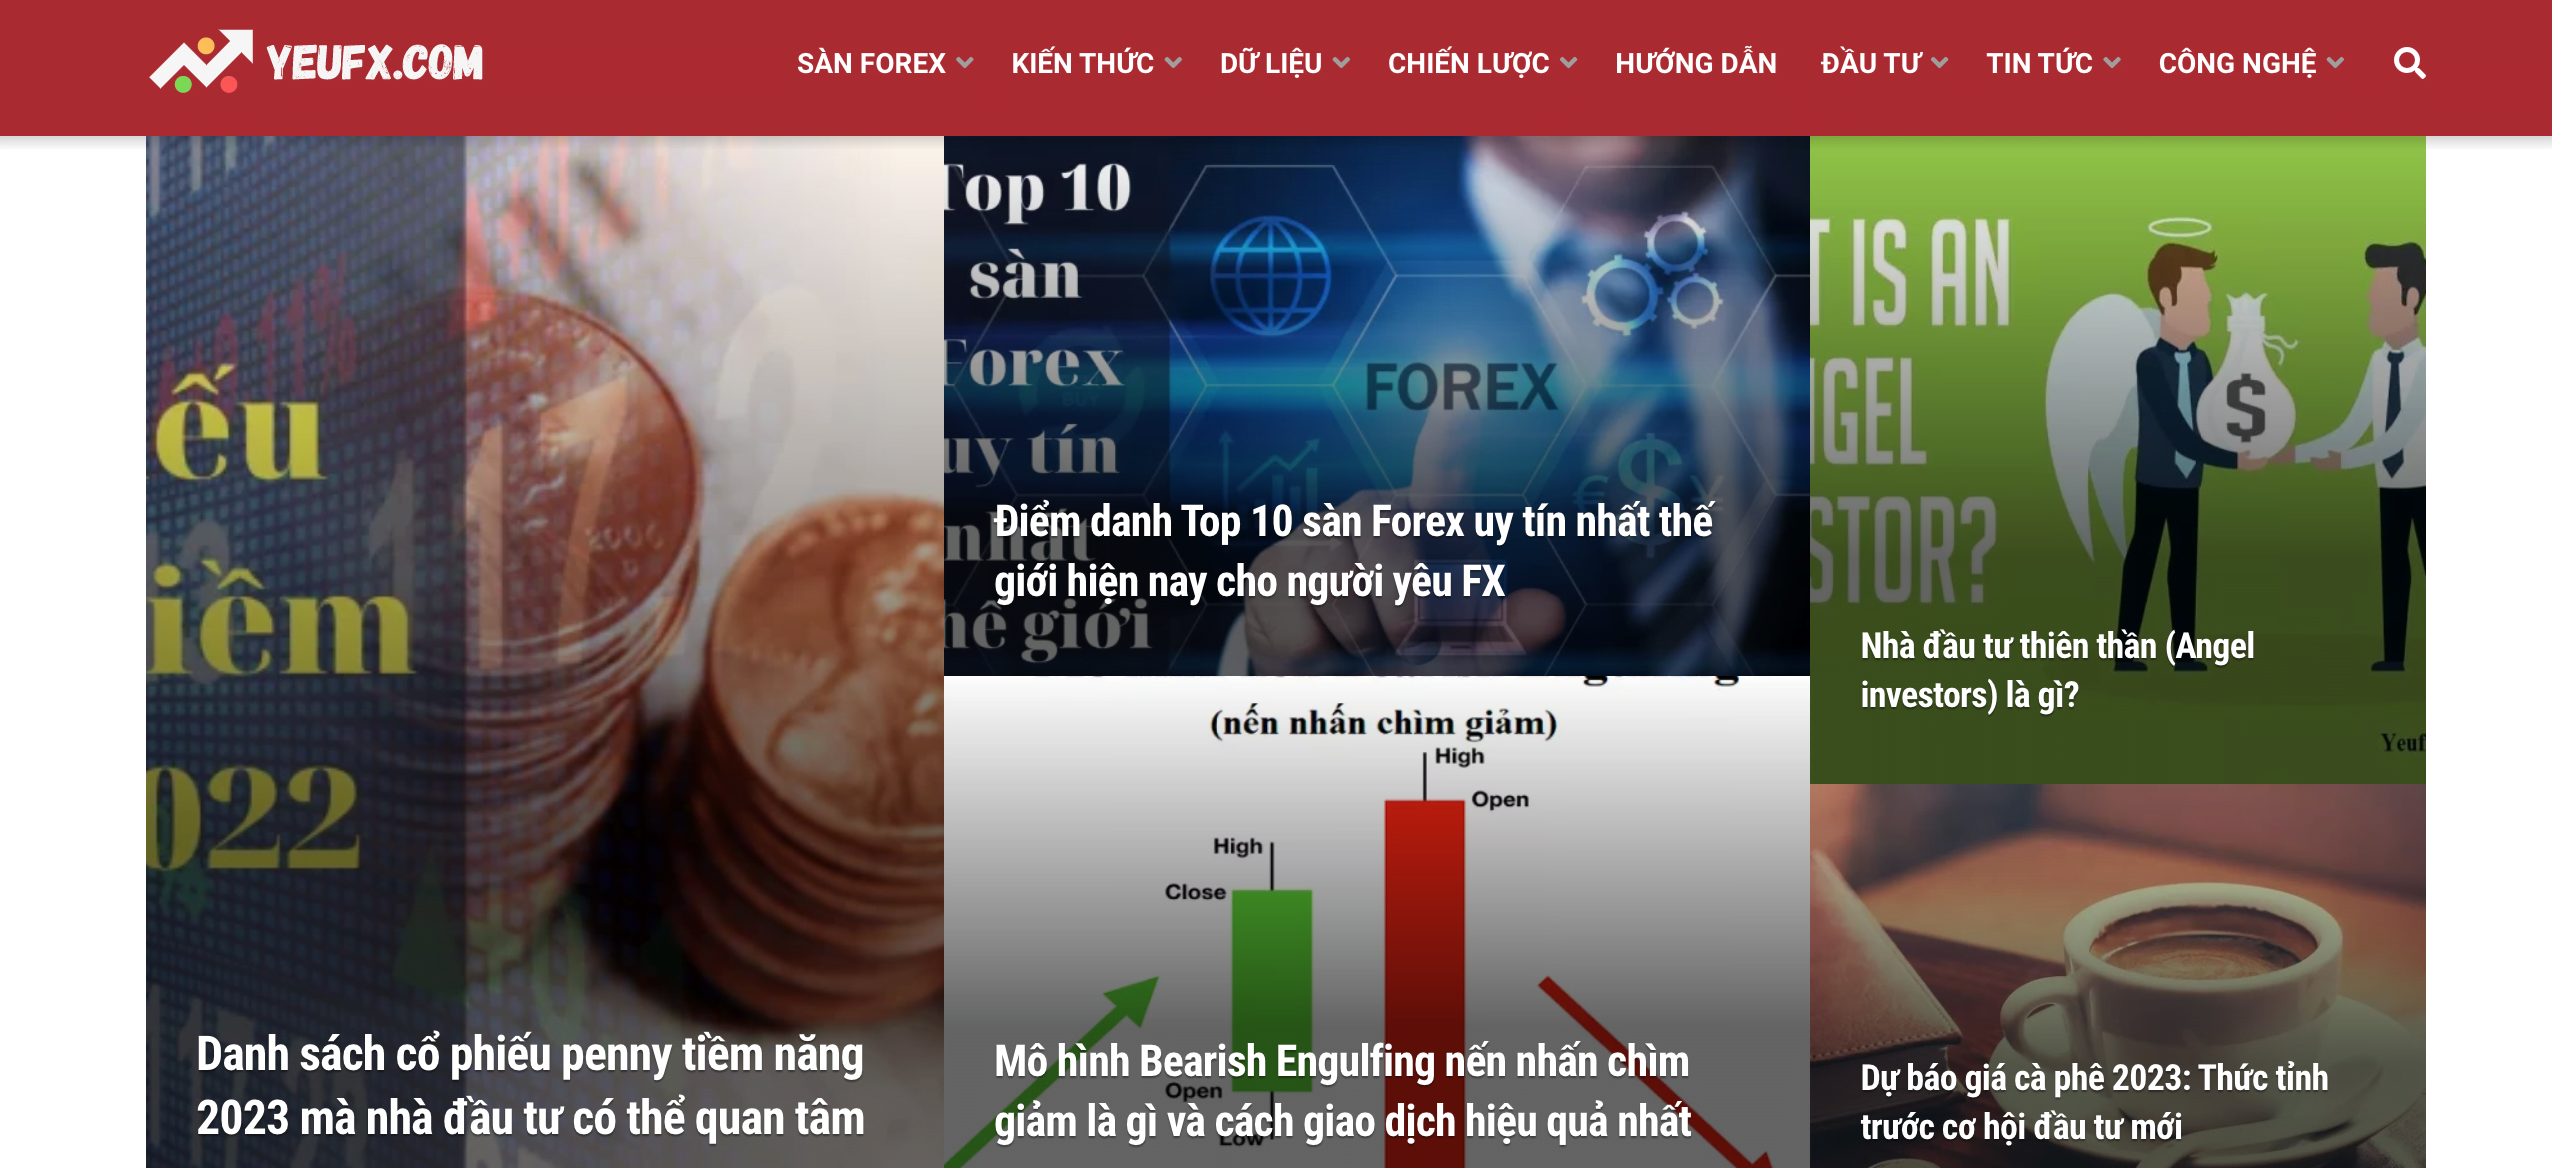 Tham gia các cộng đồng Forex hoặc xem các trang web như Yeufx.com